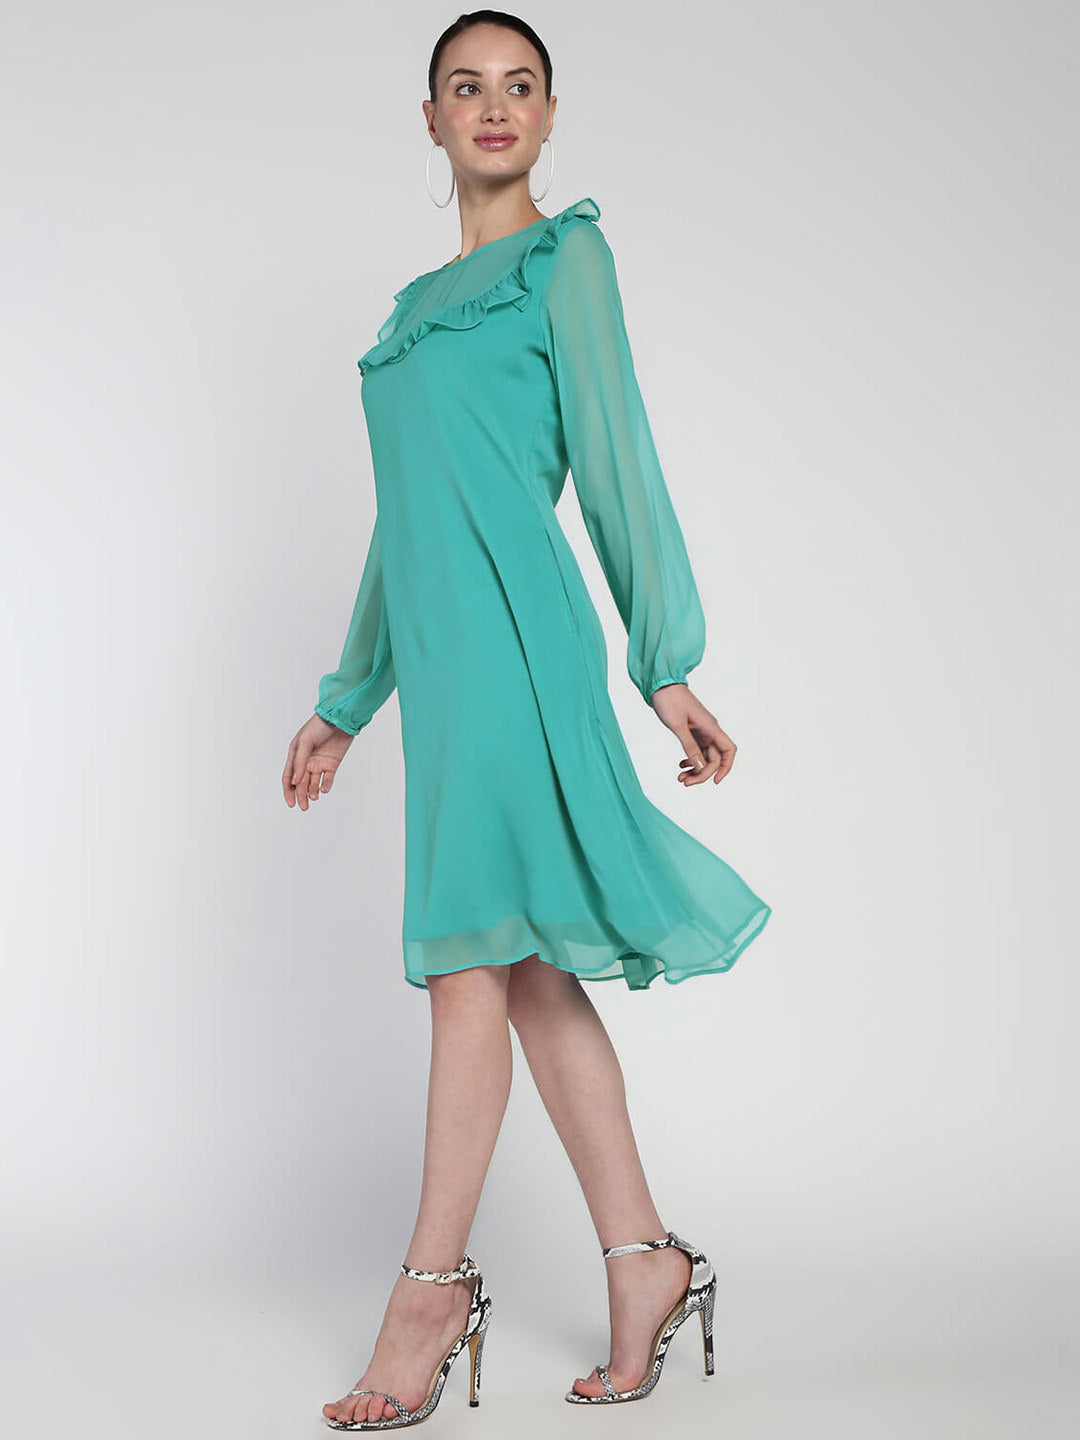 Chiffon Rayon comfort breeze Ruffled dress